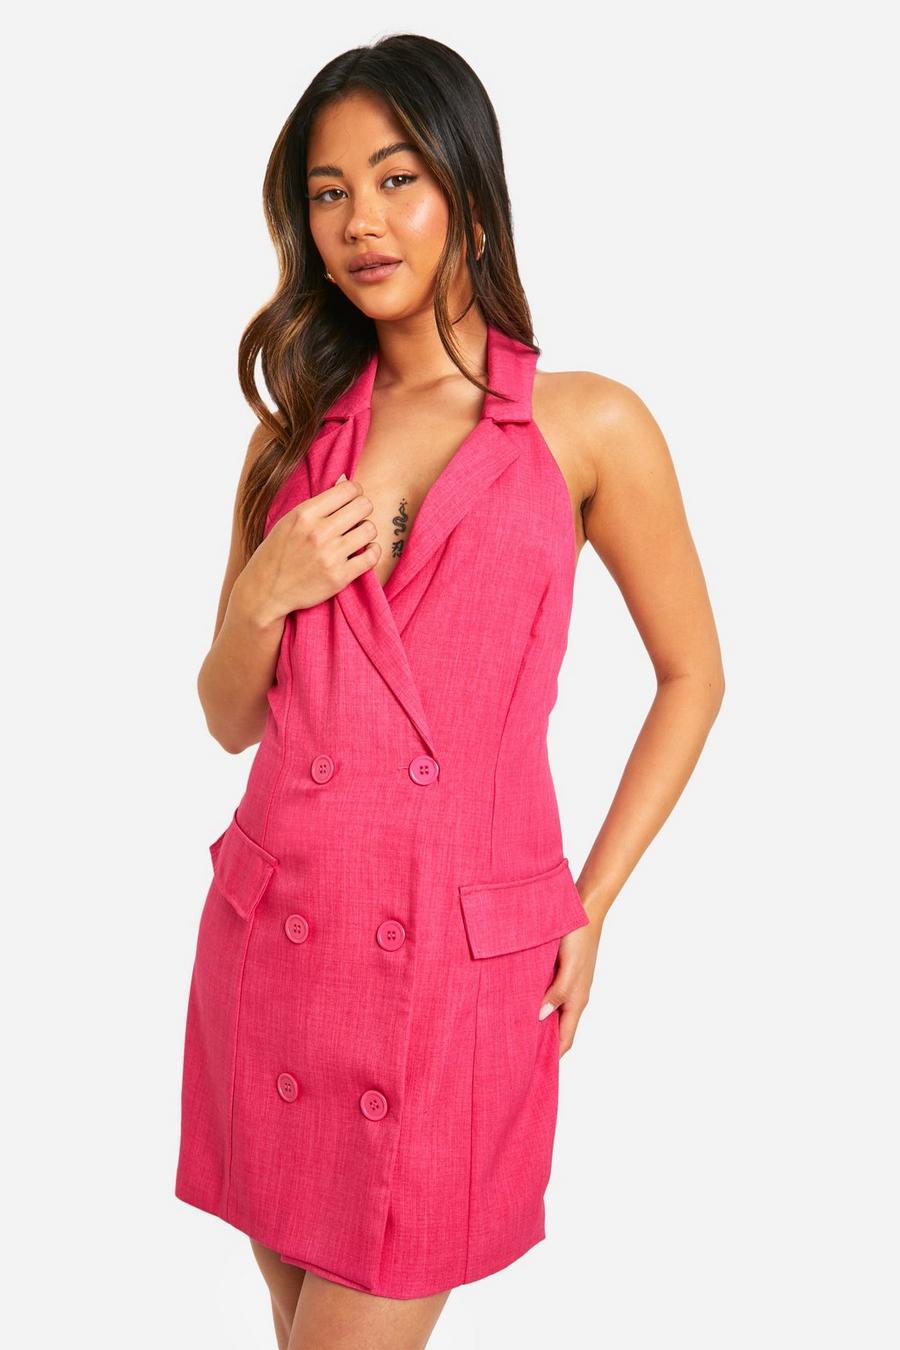 Hot pink Woven Sleeveless Blazer  Dress  